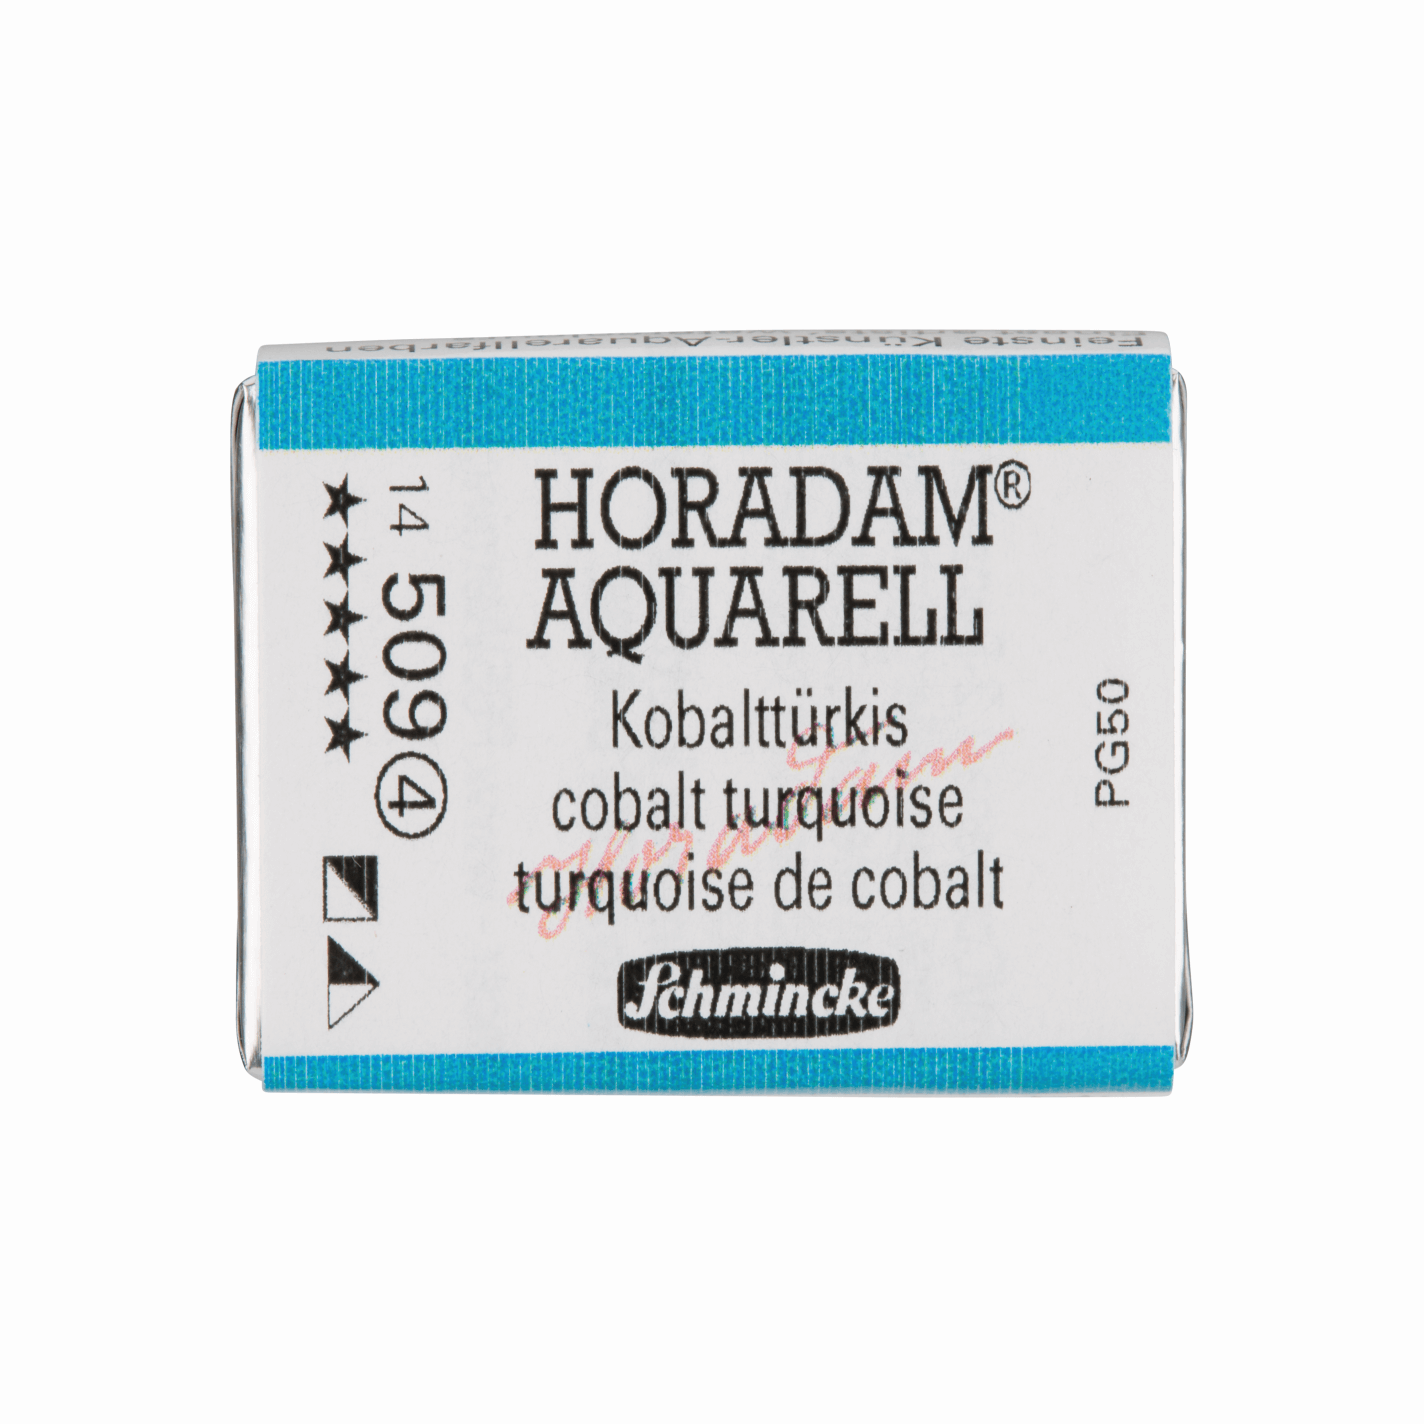 Schmincke Horadam Aquarell pans 1/1 pan Cobalt Turquoise